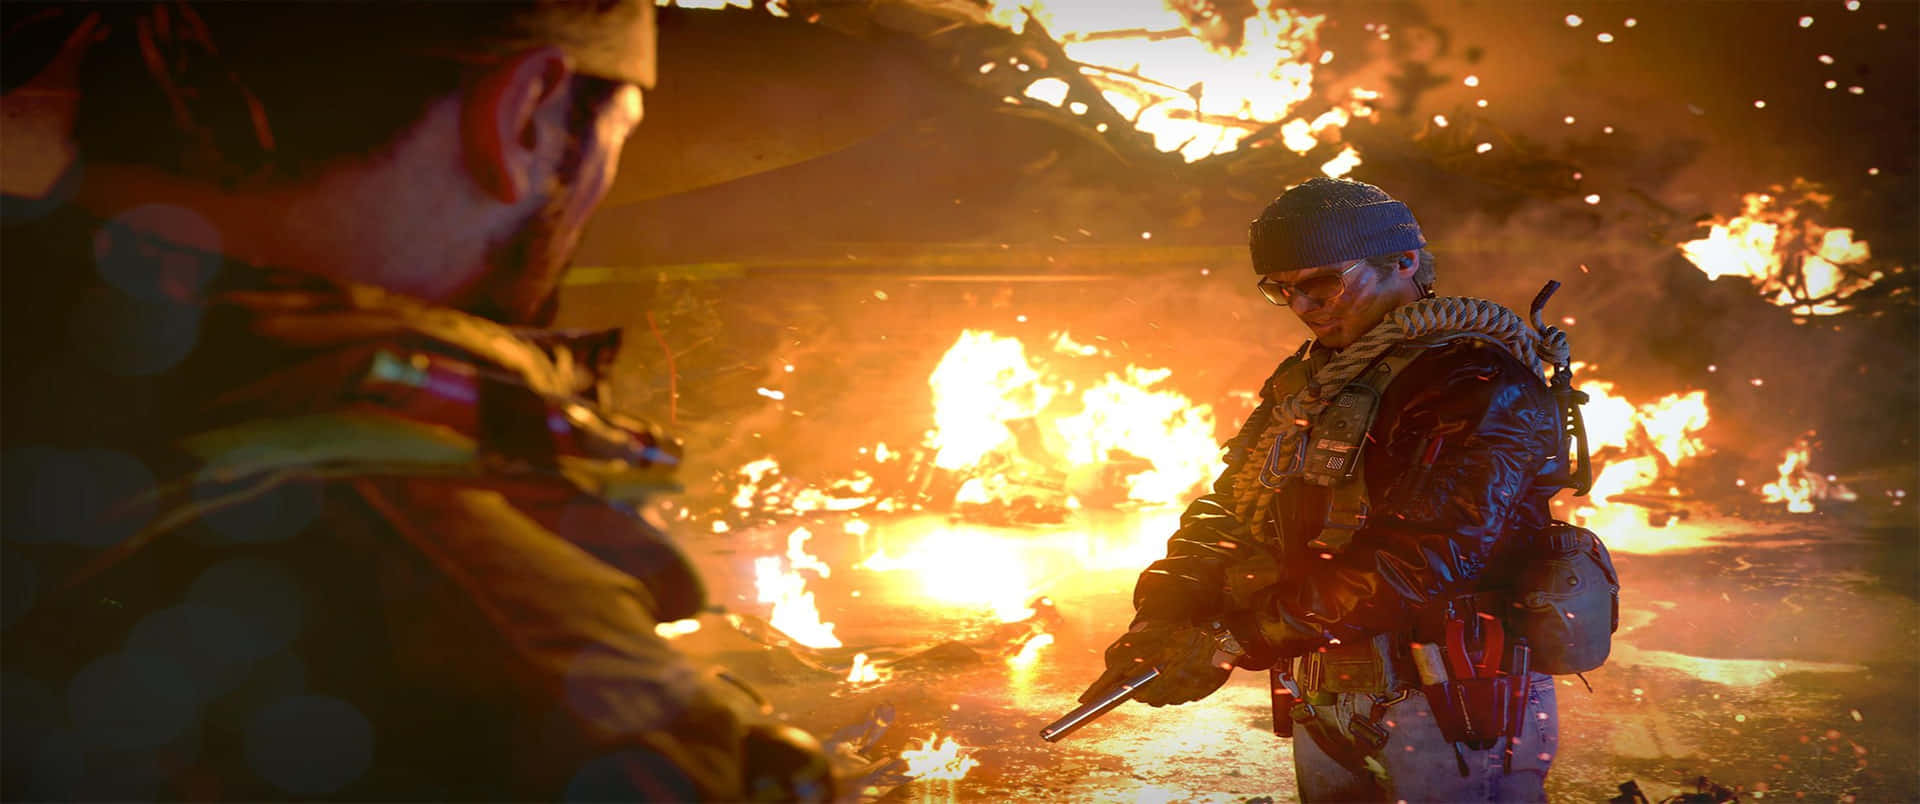 Intensascena Di Battaglia Da Call Of Duty: Black Ops Cold War Alla Risoluzione Di 3440x1440p